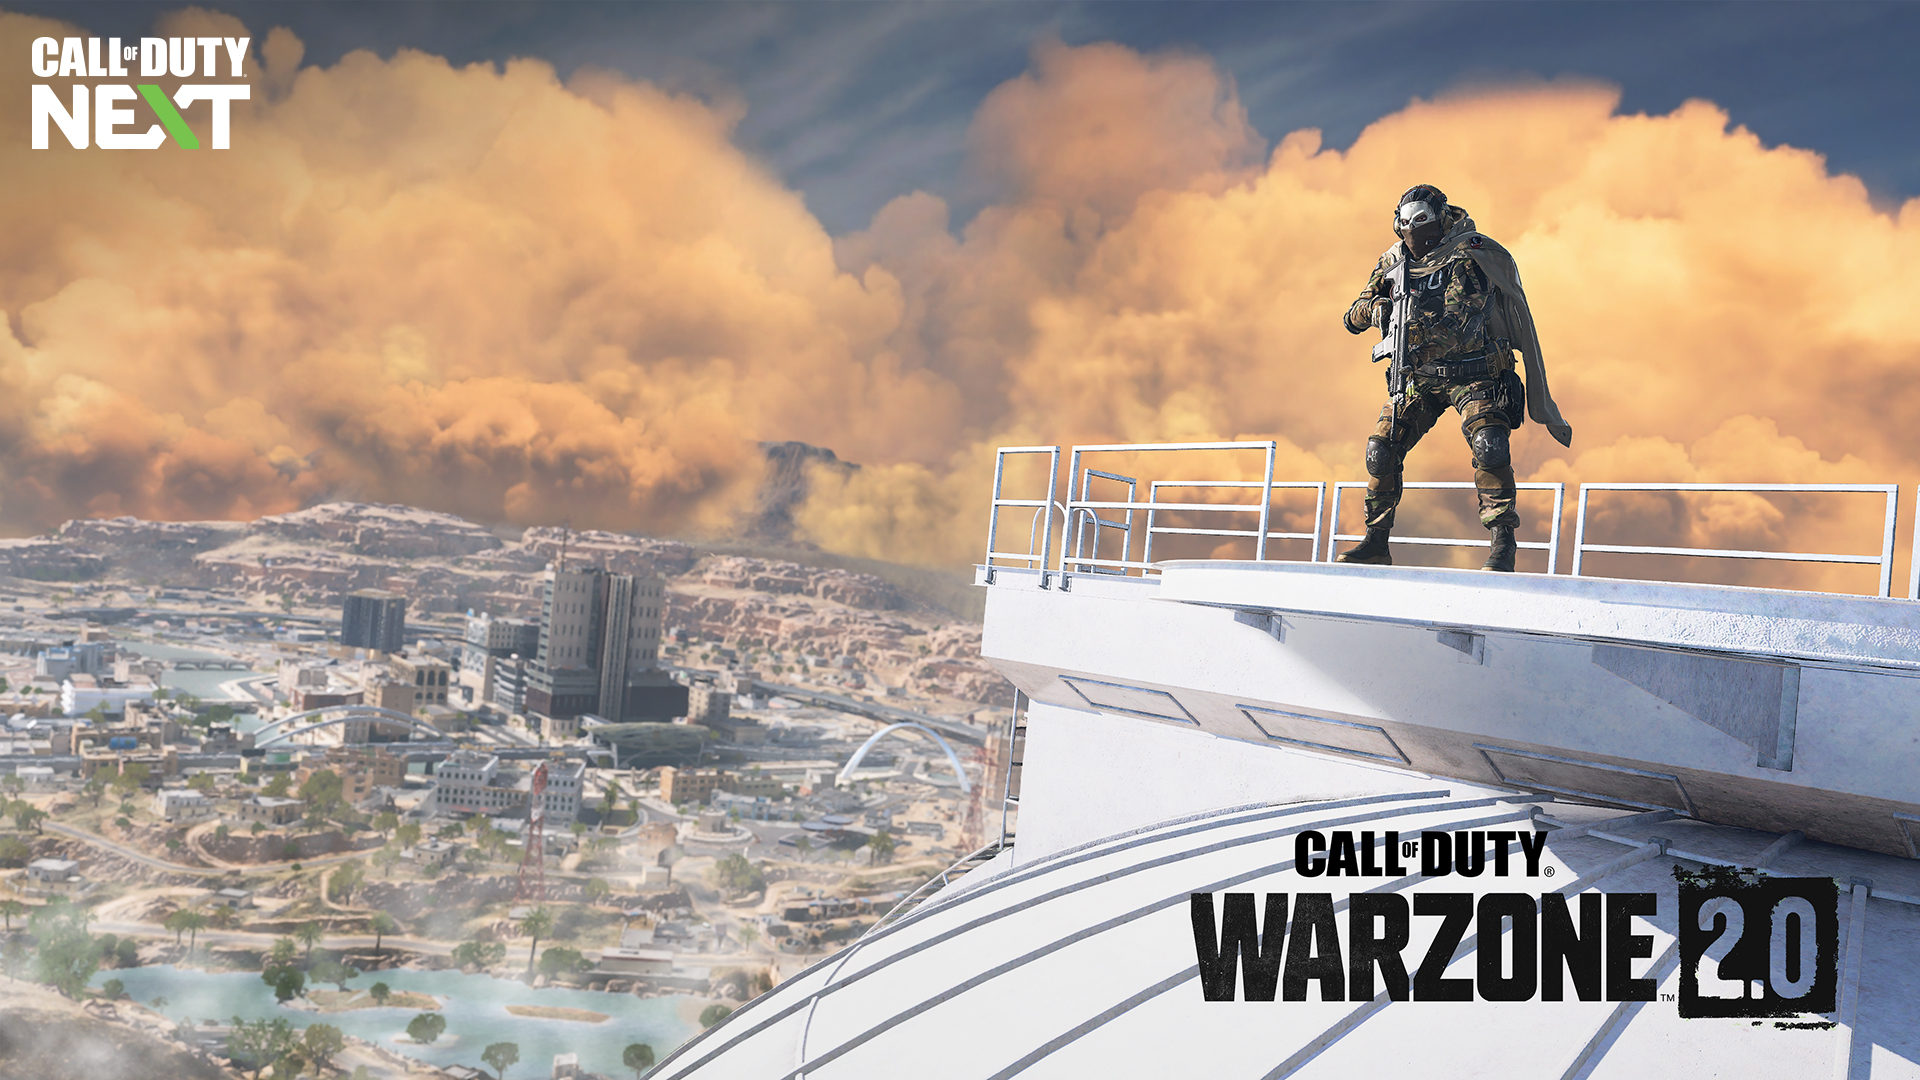 Call of Duty: Warzone 2.0 - Warzone ยุคใหม่ เริ่ม 16 พฤศจิกายนนี้